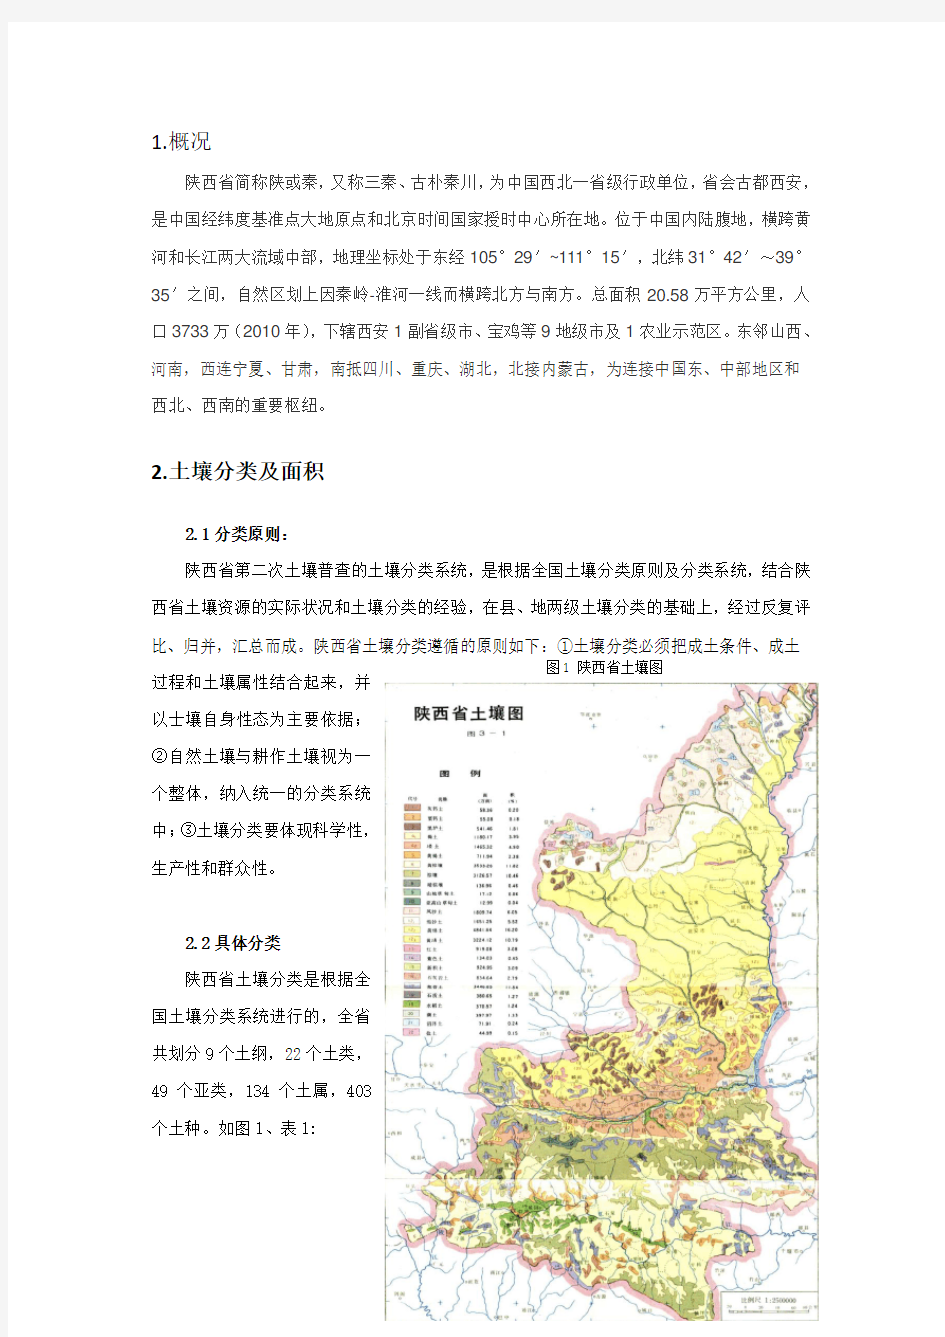 陕西省土壤资料